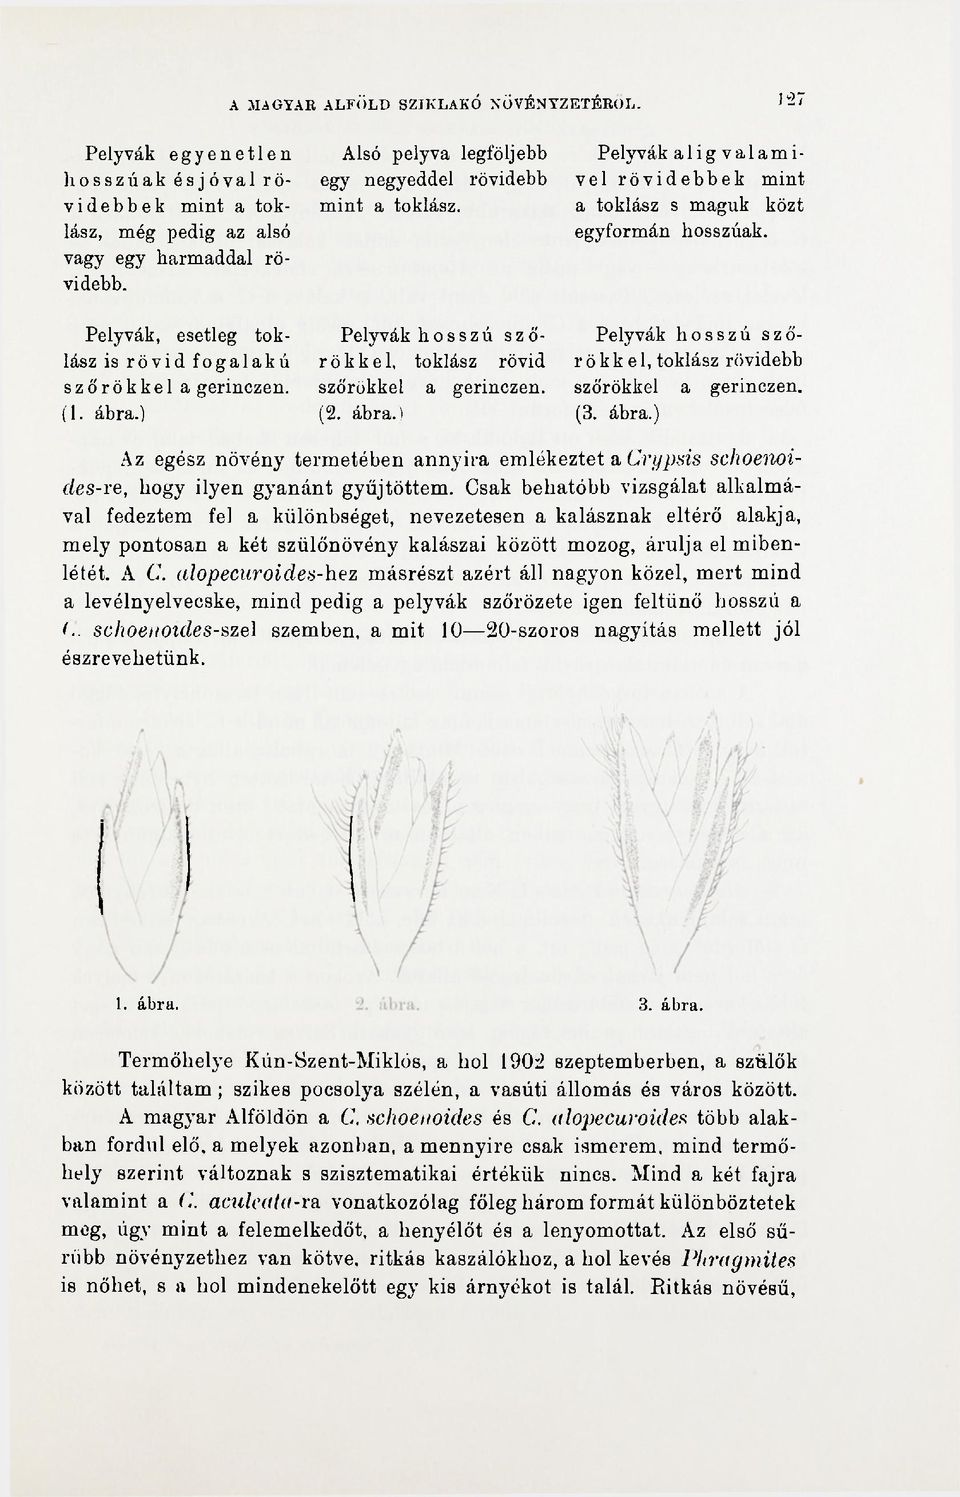 Pelyvák hosszú szőrökkel, tokiász rövid szőrökkel a gerinczen. (2. ábra.) Pelyvák a 1 i g v a 1 a m i- vel rövidebbek mint a tokiász s maguk közt egyformán hosszúak.